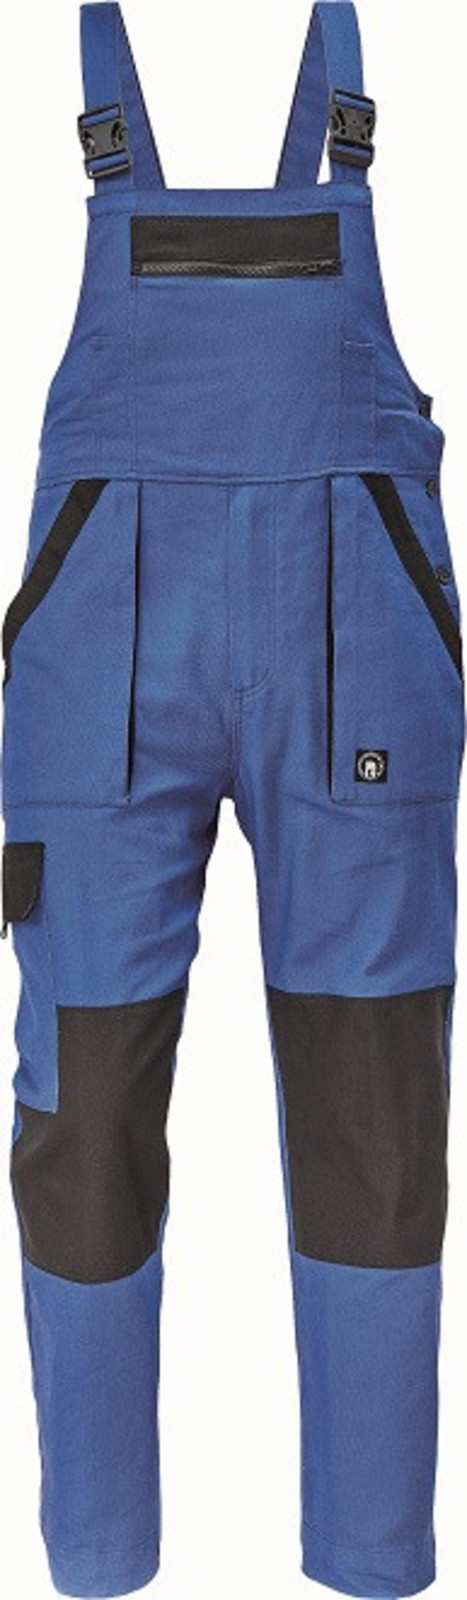 Bavlnené montérky na traky Cerva Max Neo pánske - veľkosť: 66, farba: modrá